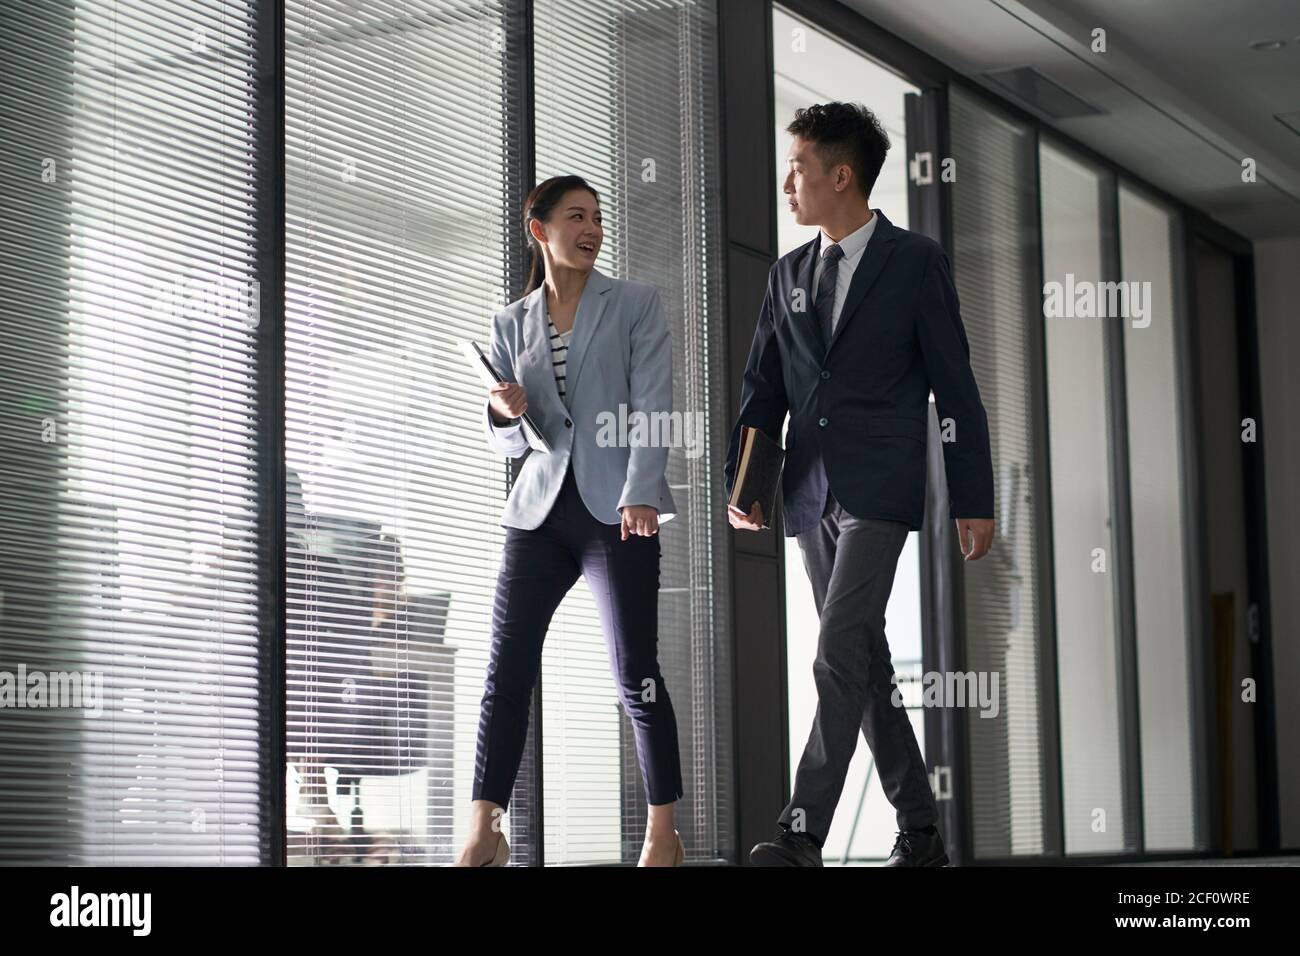 deux hommes d'affaires asiatiques sur le chemin de la rencontre en marchant dans le bureau Banque D'Images